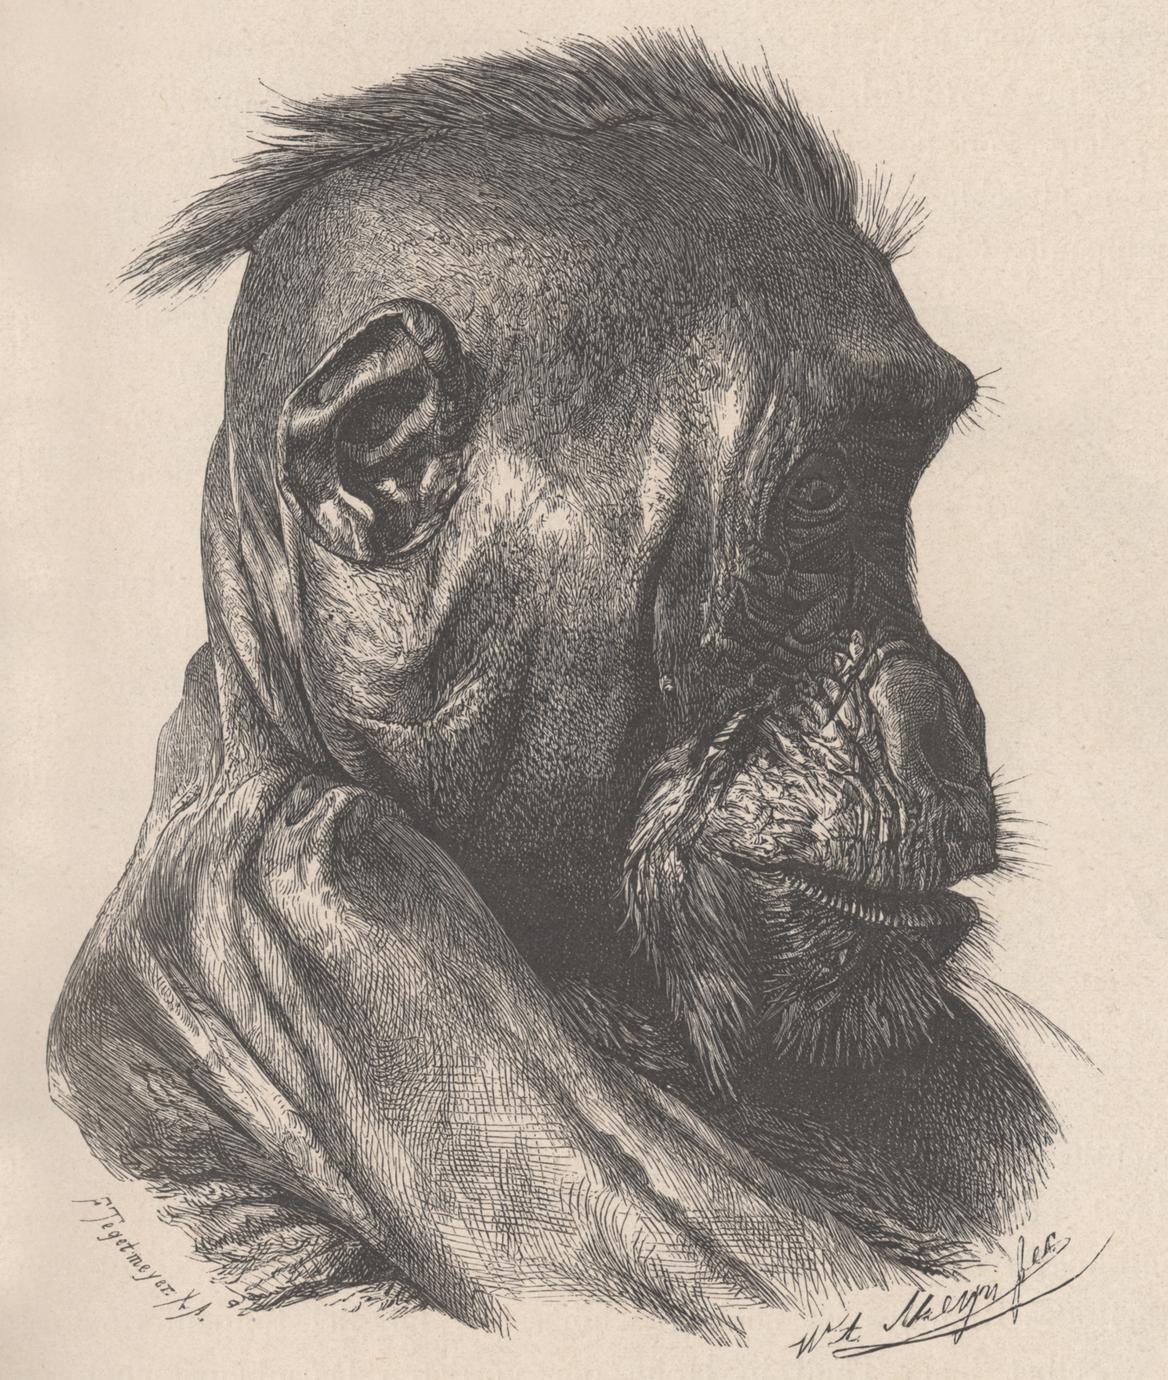 Kopf desselben mannlichen Gorilla in Profil gesehen